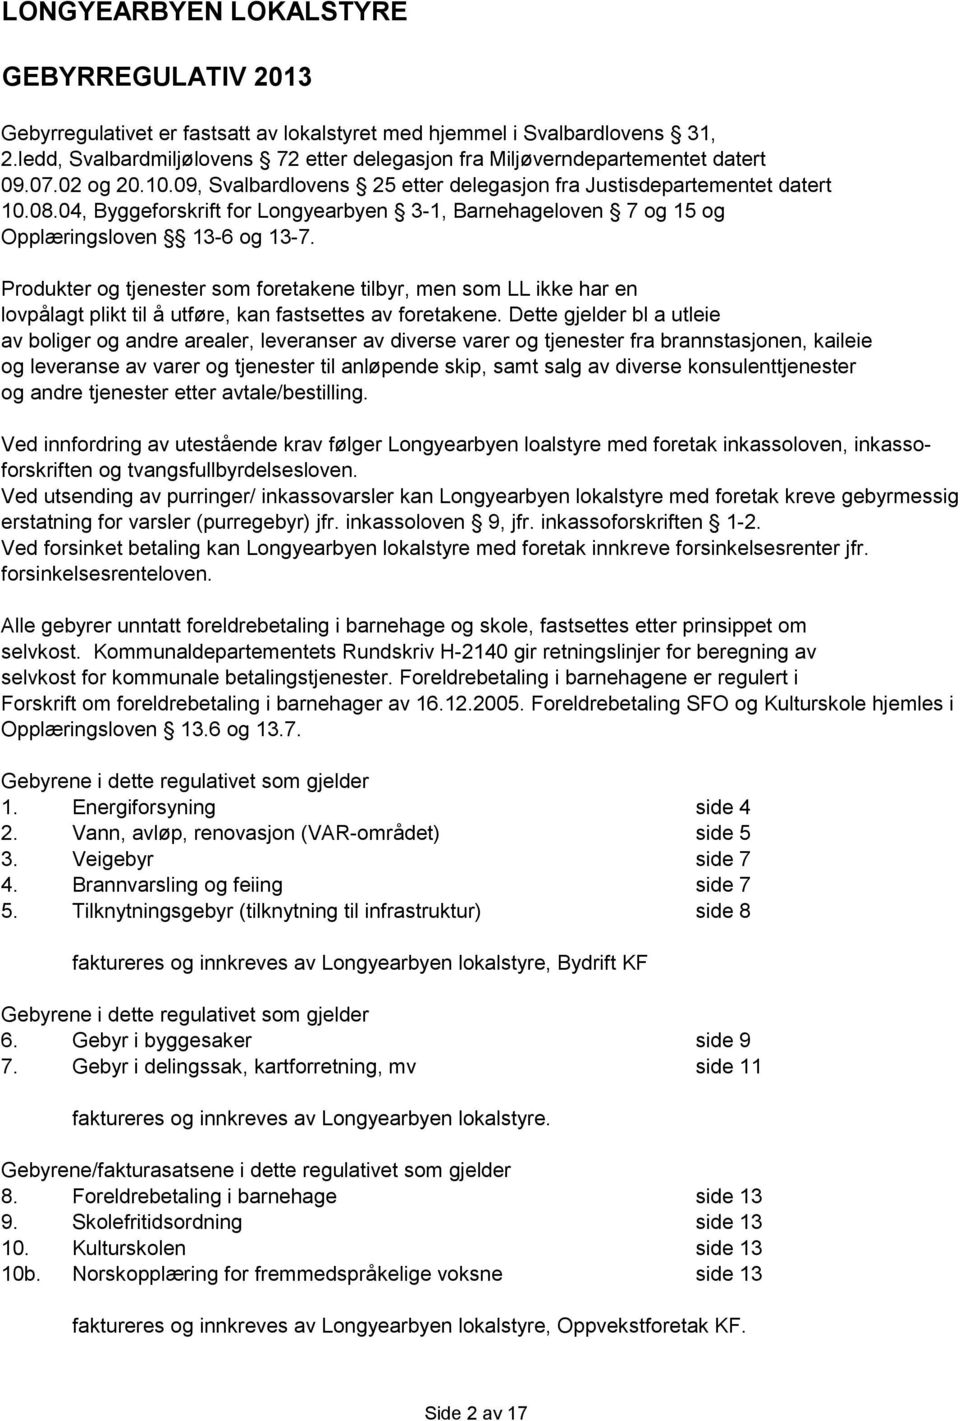 04, Byggeforsift for Longyearbyen 3-1, Barnehageloven 7 og 15 og Opplæringsloven 13-6 og 13-7.